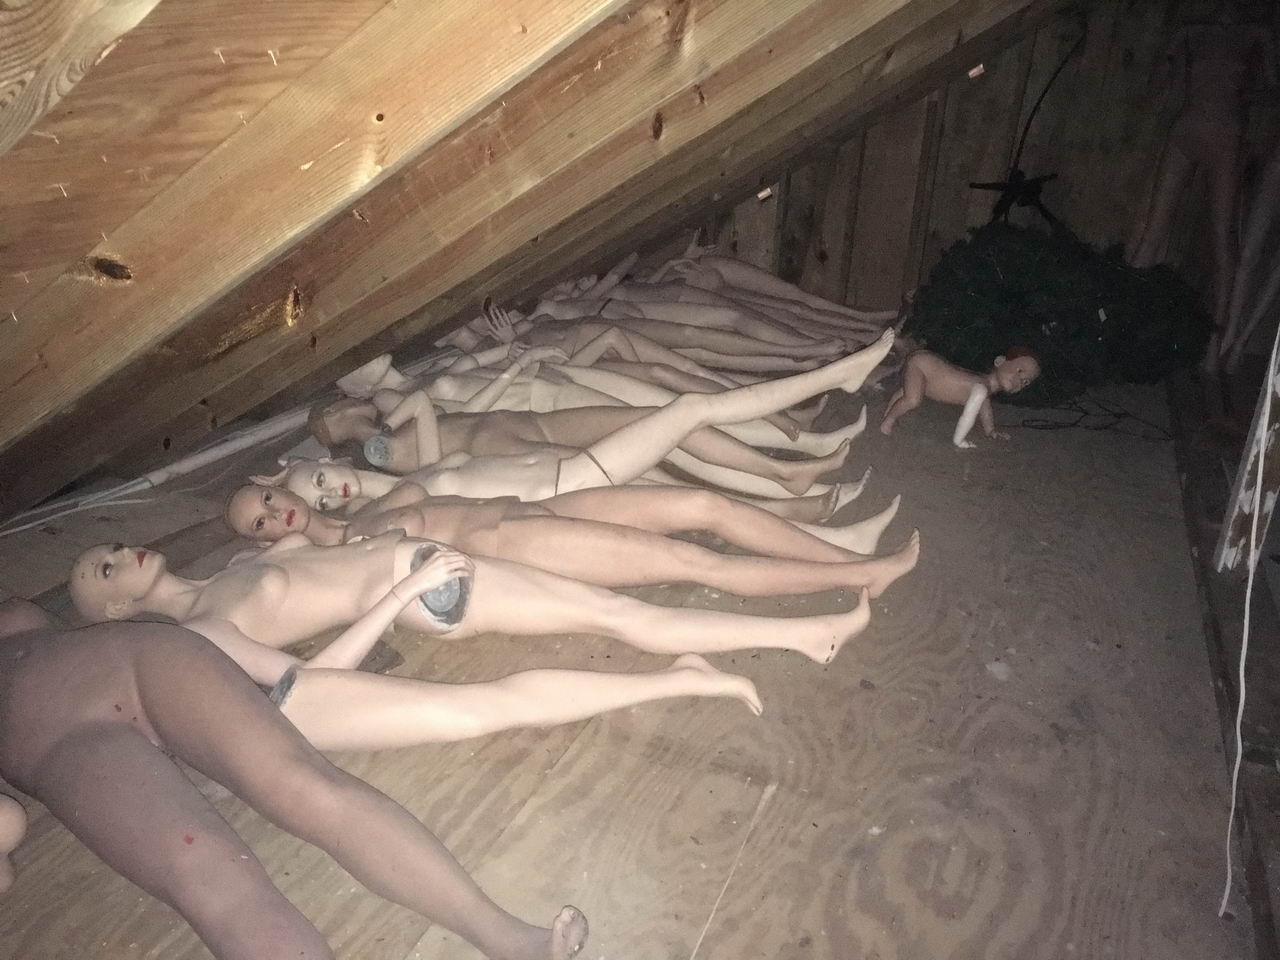 mannequins in attic